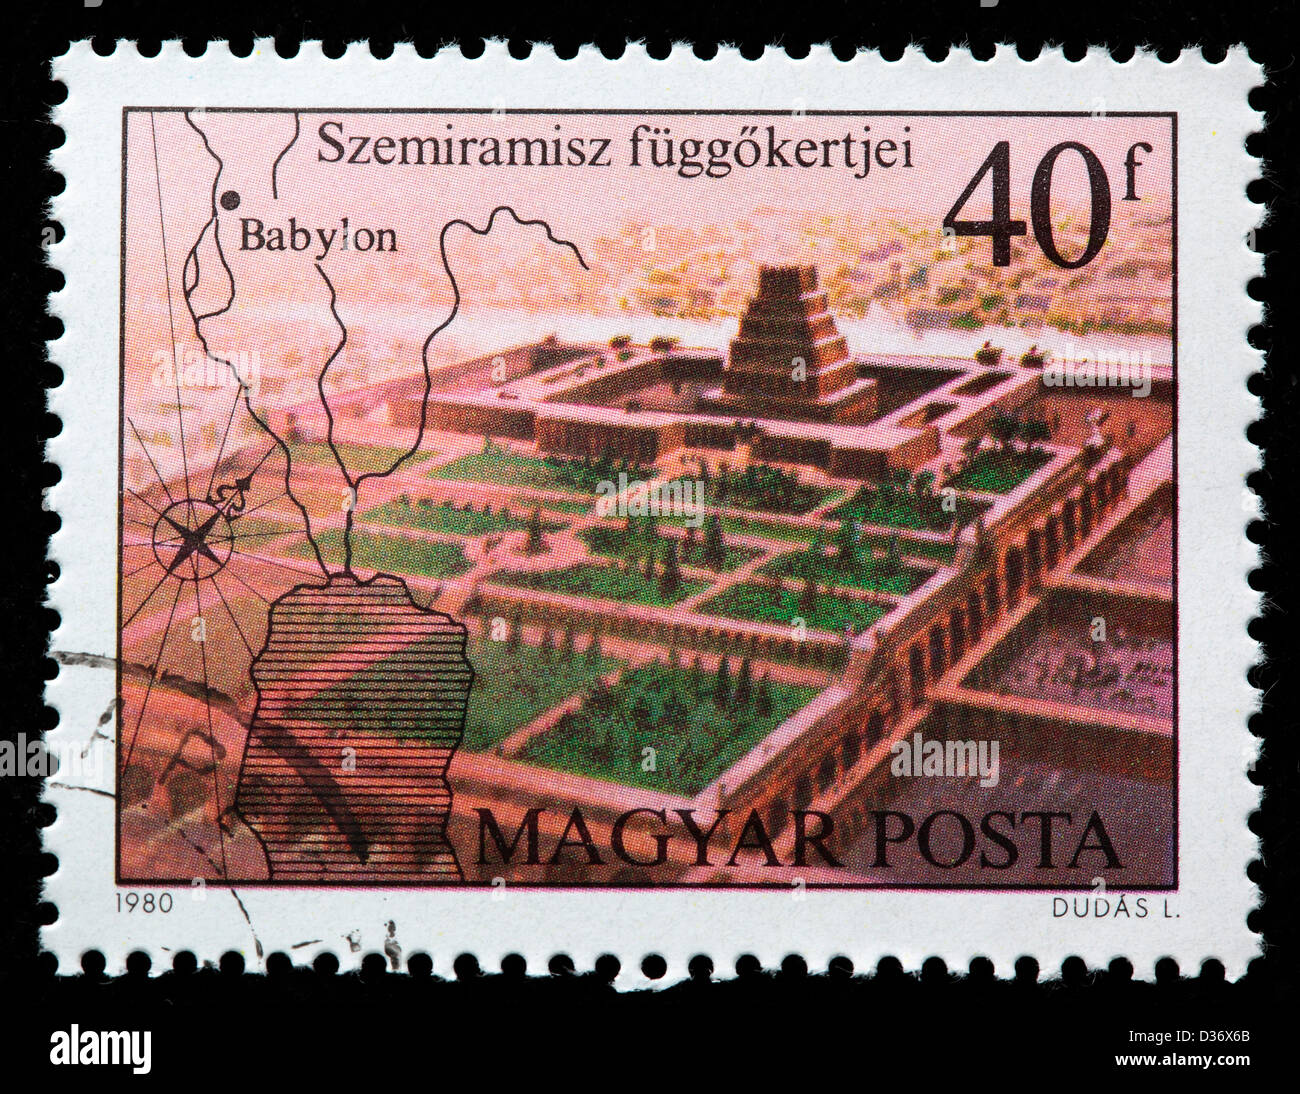 Hängenden Gärten der Semiramis, Babylon, Briefmarke, Ungarn, 1980 Stockfoto